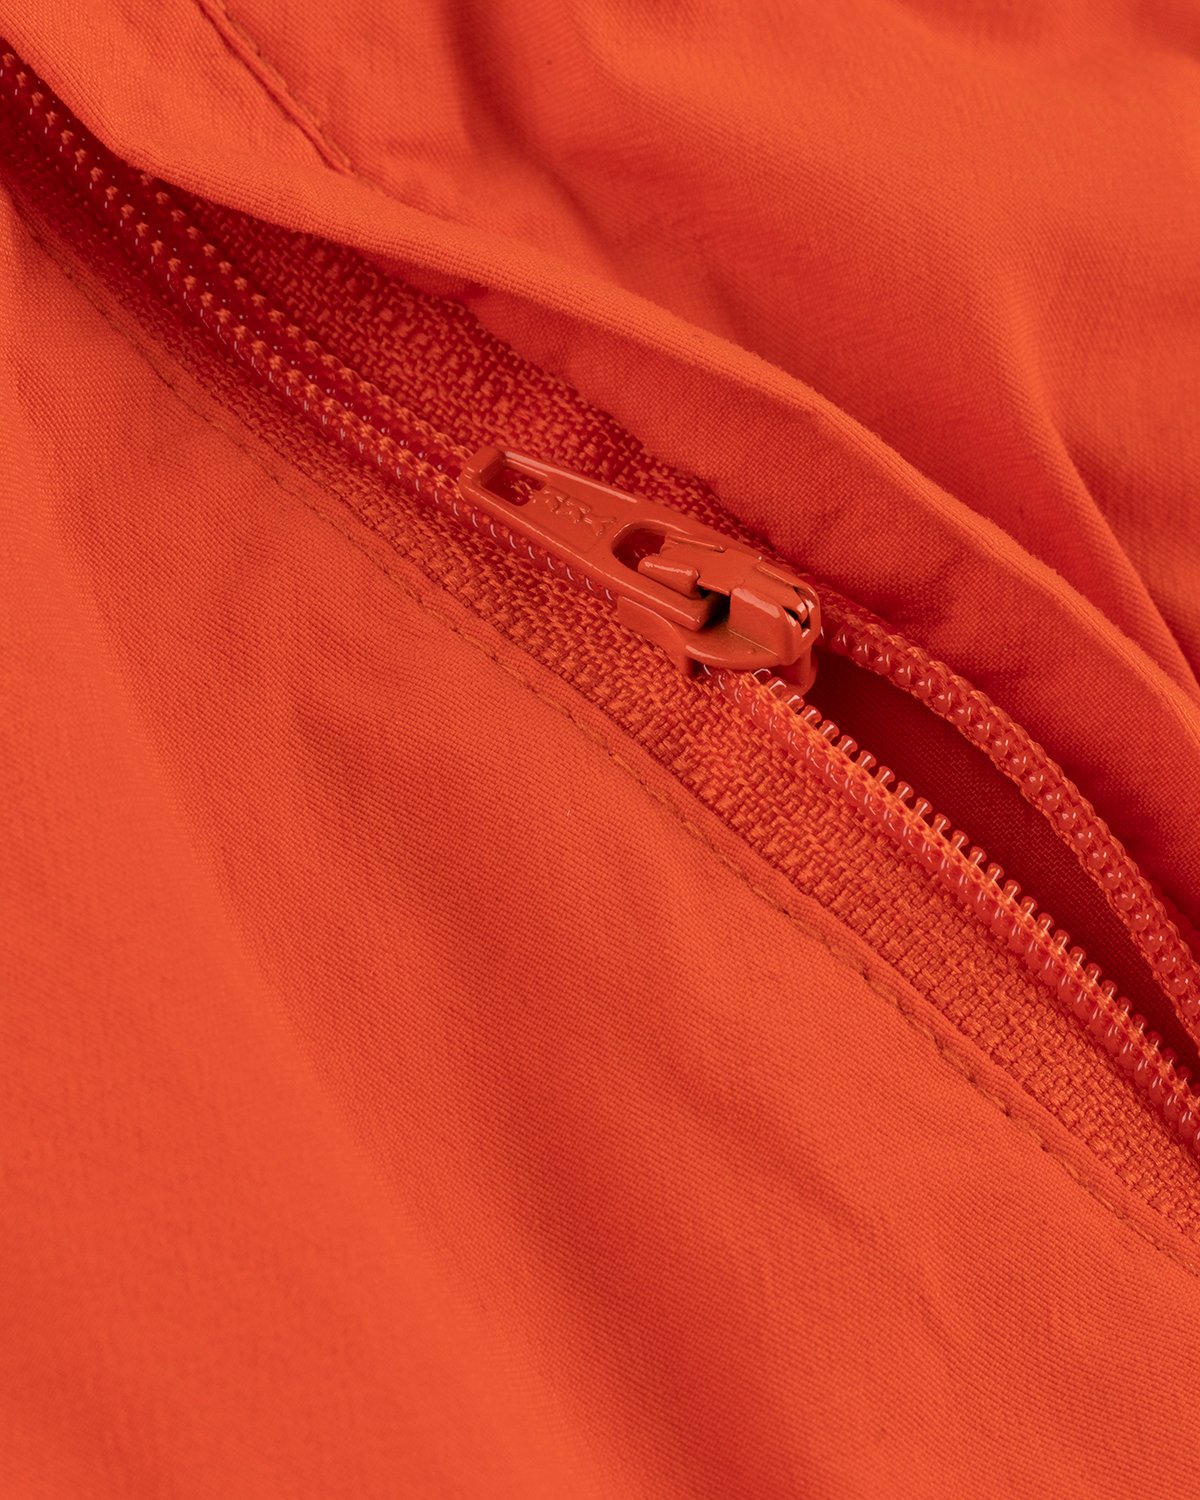 A-Cold-Wall* - Natant Nylon Short Rich Orange - Clothing - Orange - Image 8